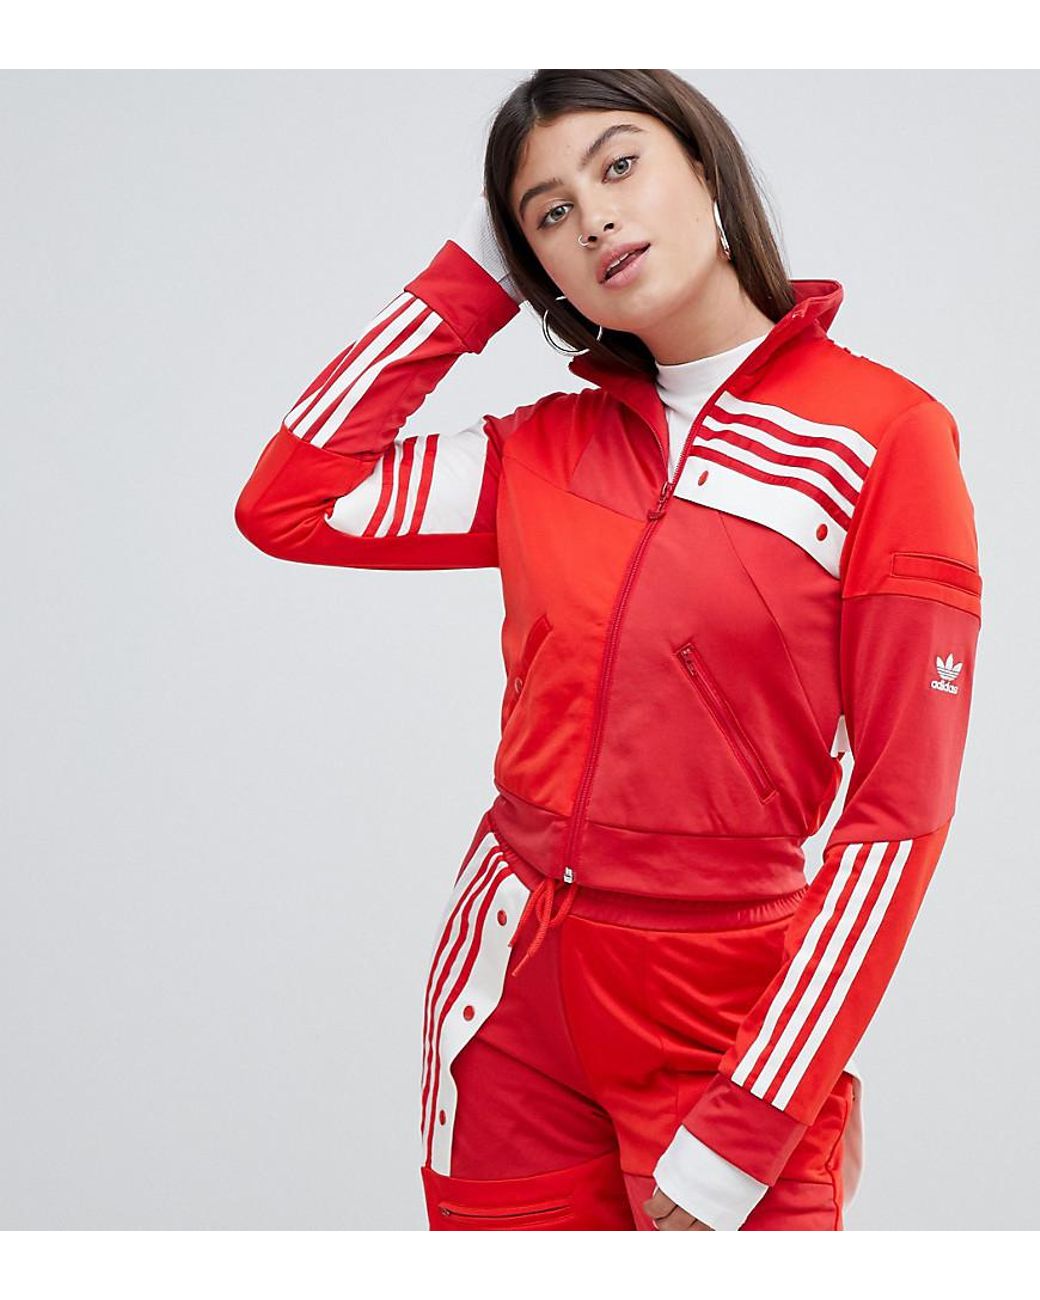 Спортивные костюмы red. Adidas Originals Danielle Cathari. Adidas Originals x Danielle Cathari. Спортивный костюм adidas Danielle Cathari. Спортивный костюм женский адидас 2022 красный.